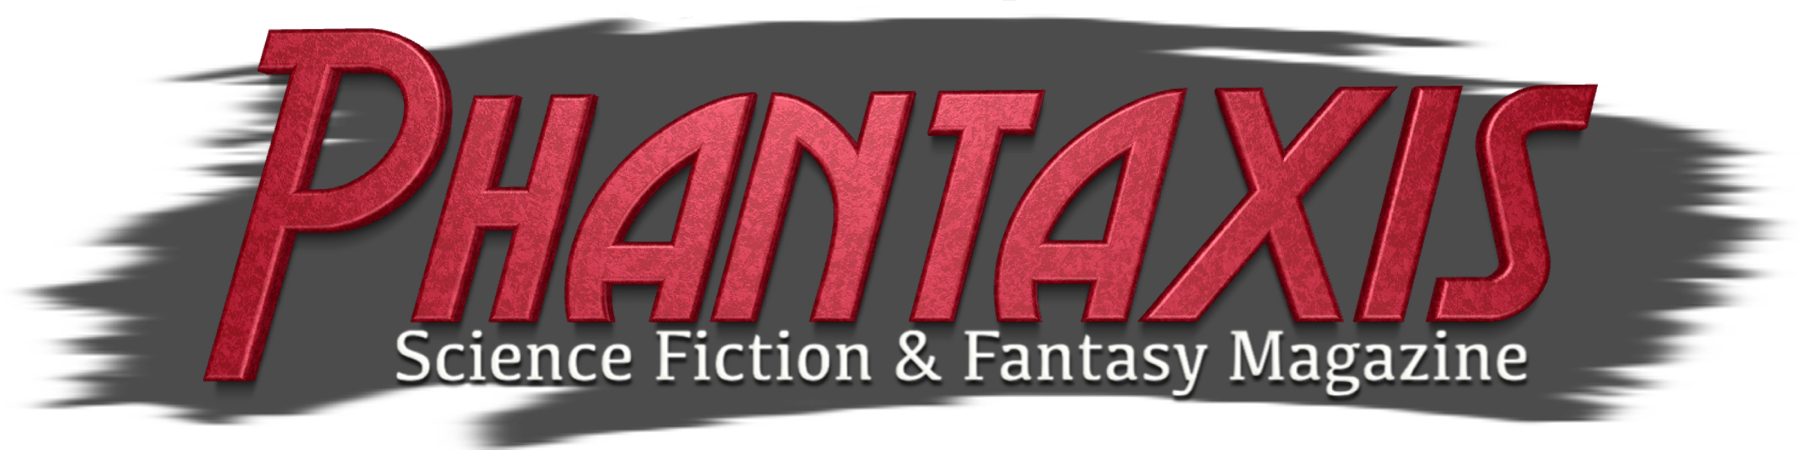 Phantaxis Science Fiction & Fantasy Magazine